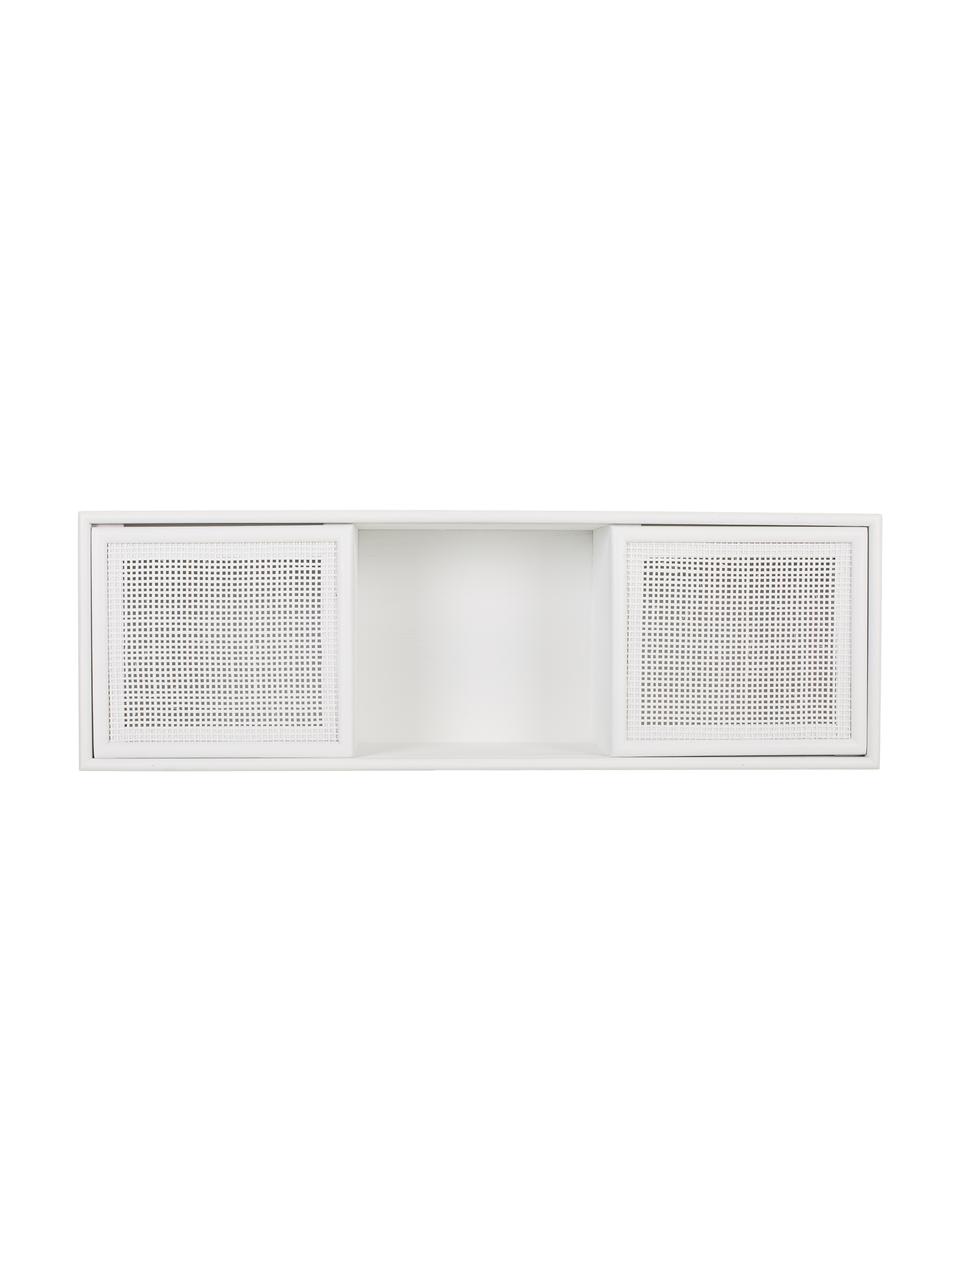 Scaffale da parete in legno Cayetana, Legno, bianco laccato, Larg. 18 x Prof. 26 cm